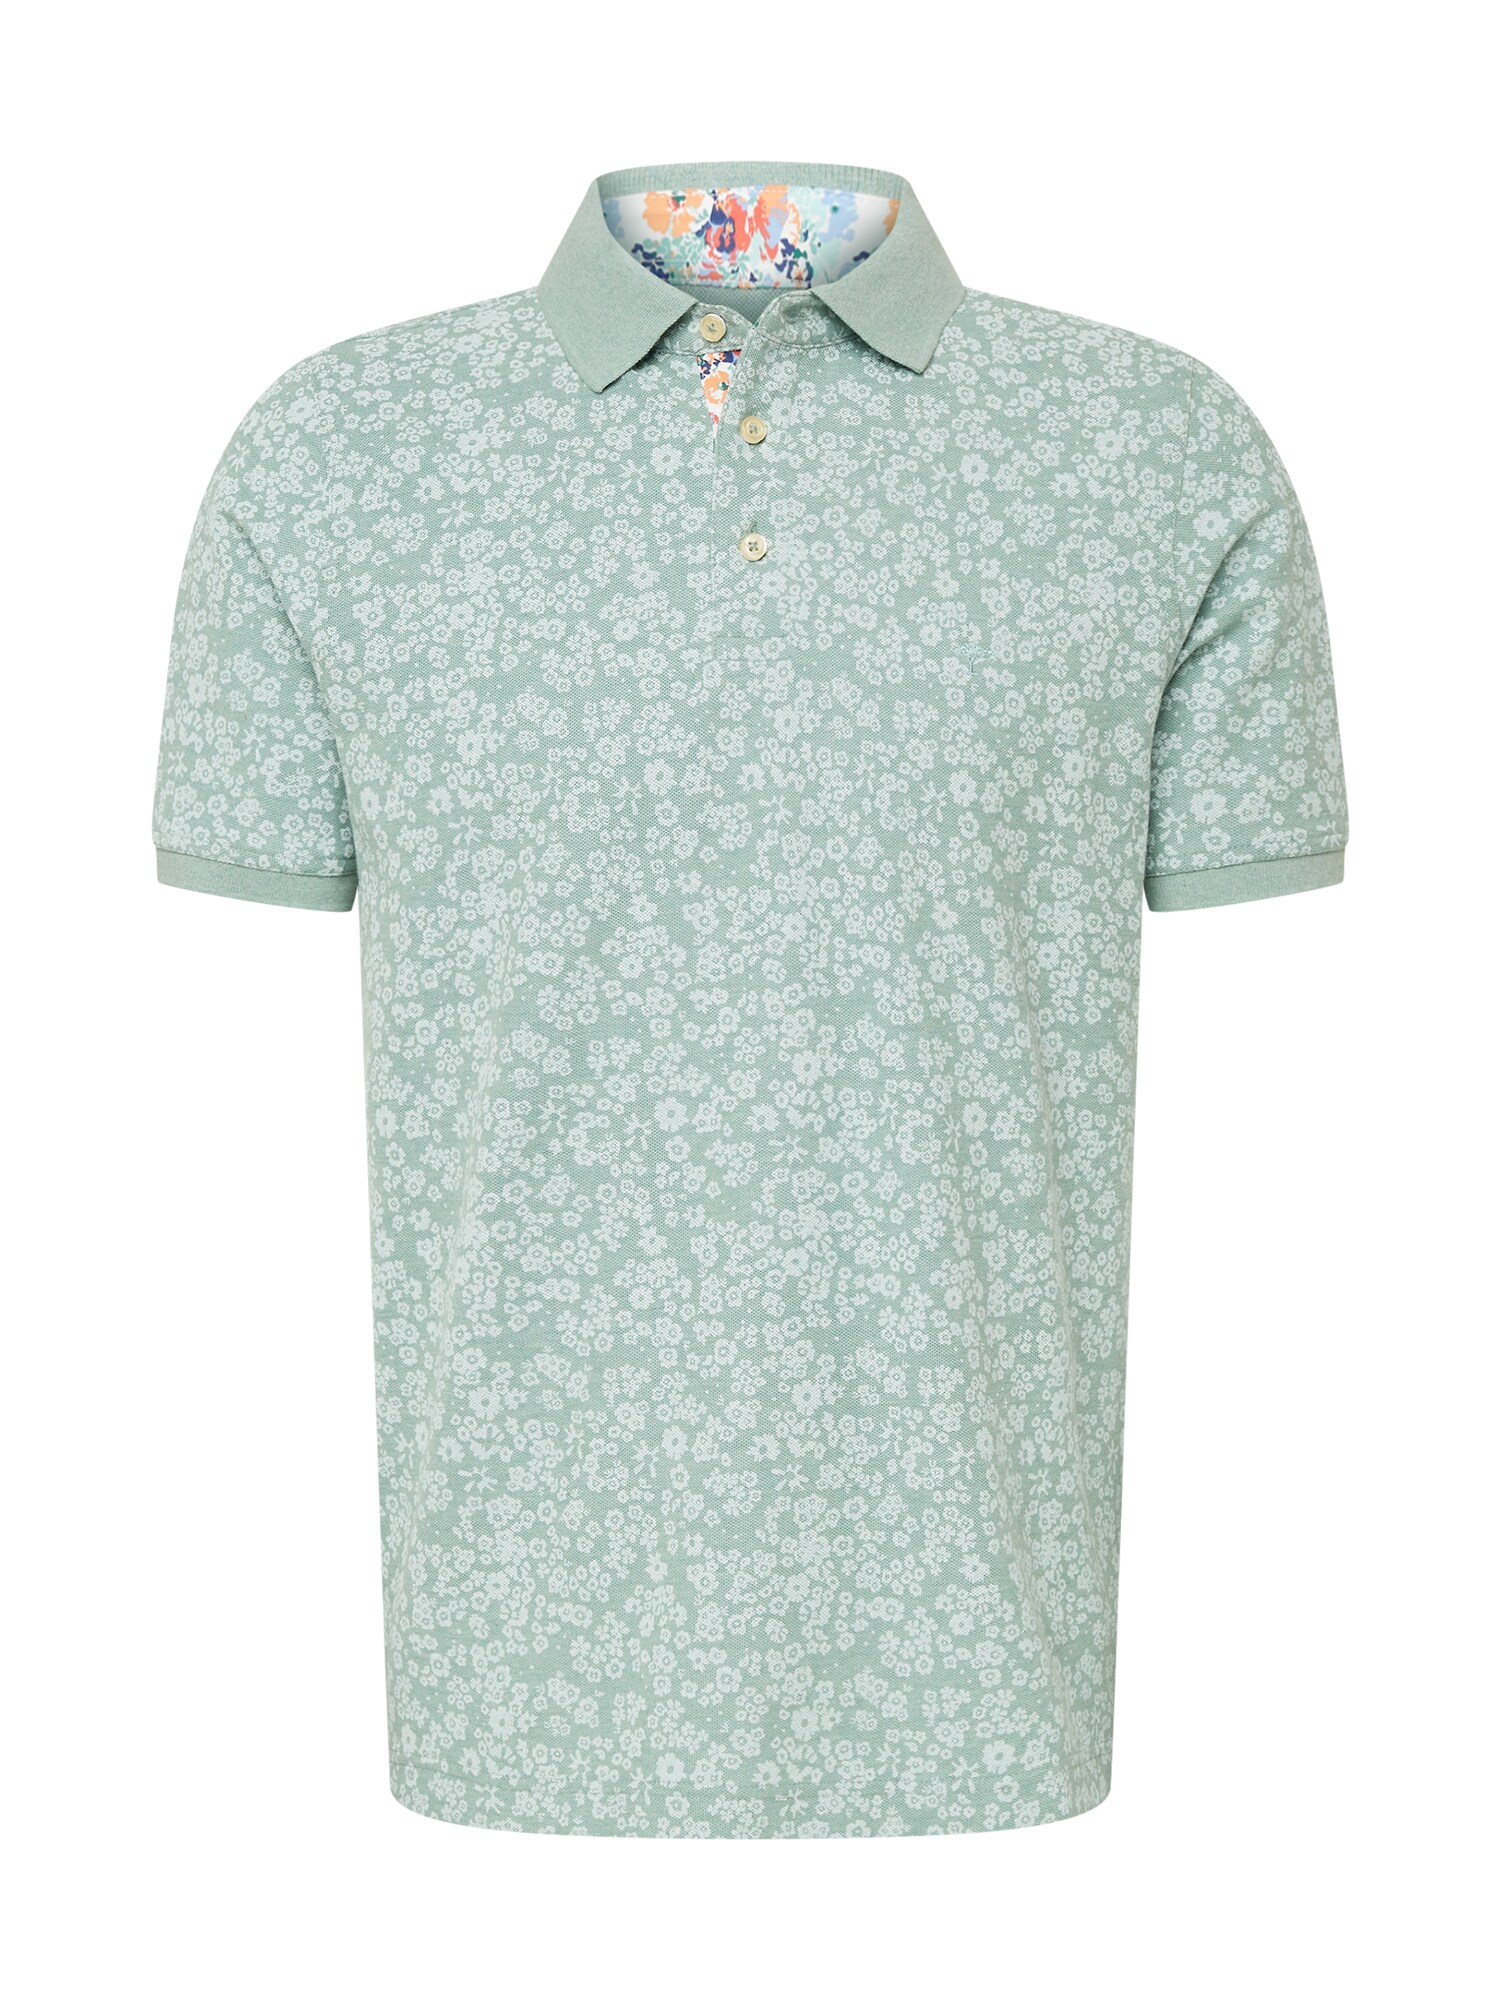 FYNCH-HATTON Marškinėliai mėtų spalva / pastelinė žalia